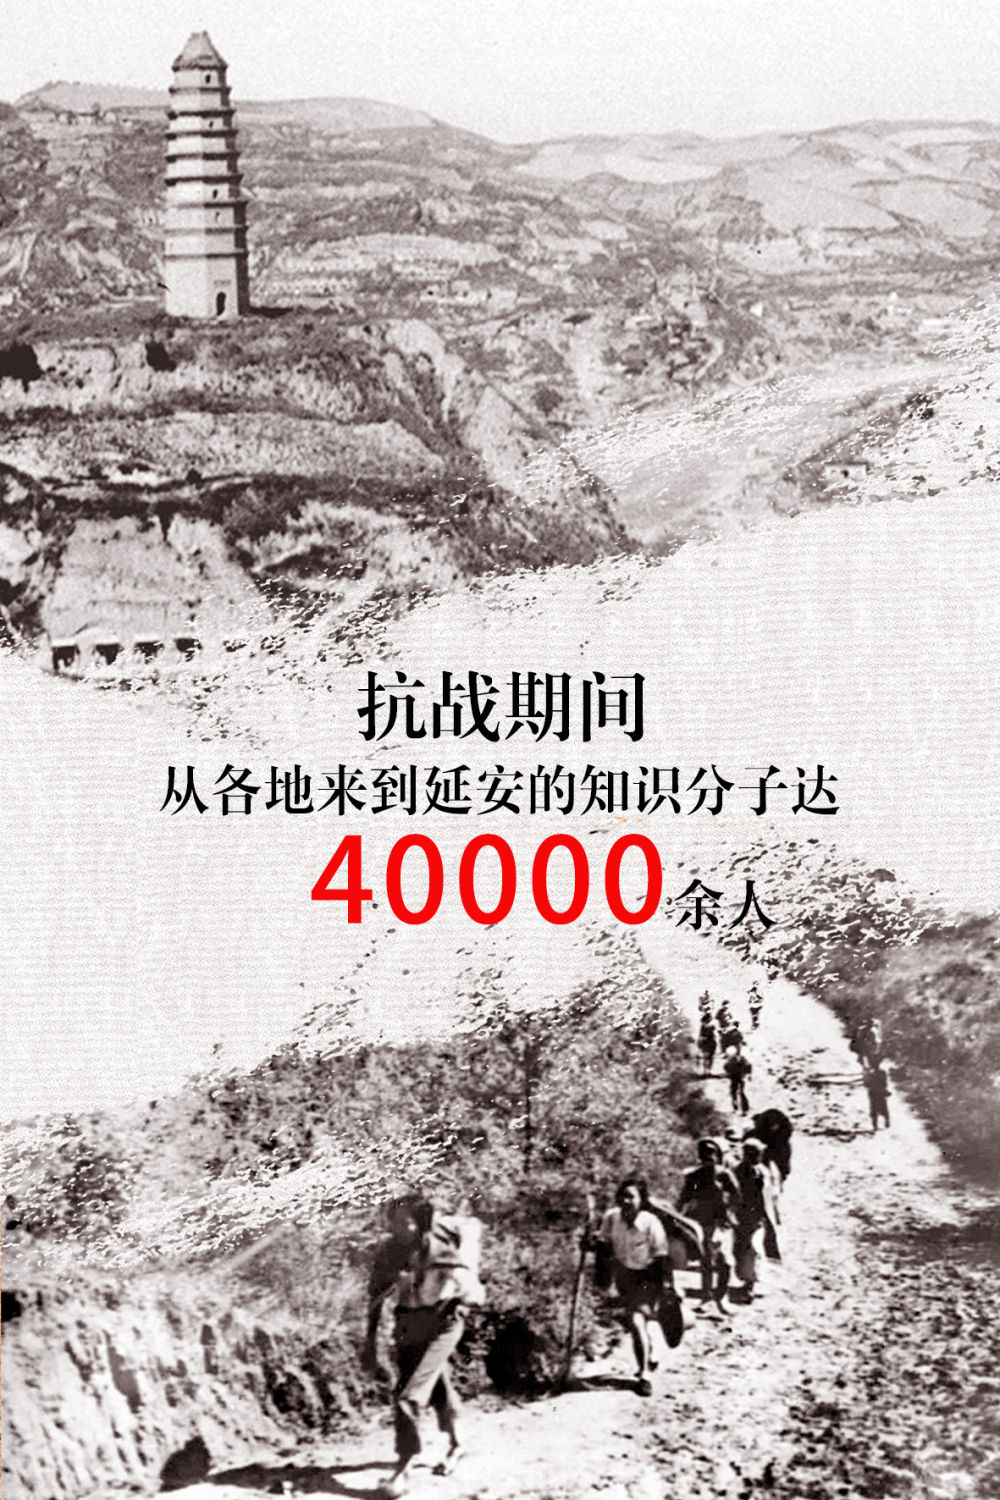 新华全媒+|这组大数据告诉你，延安当年有多红|4万多名知识分子奔赴延安！这里是抗战中的“光明之城”